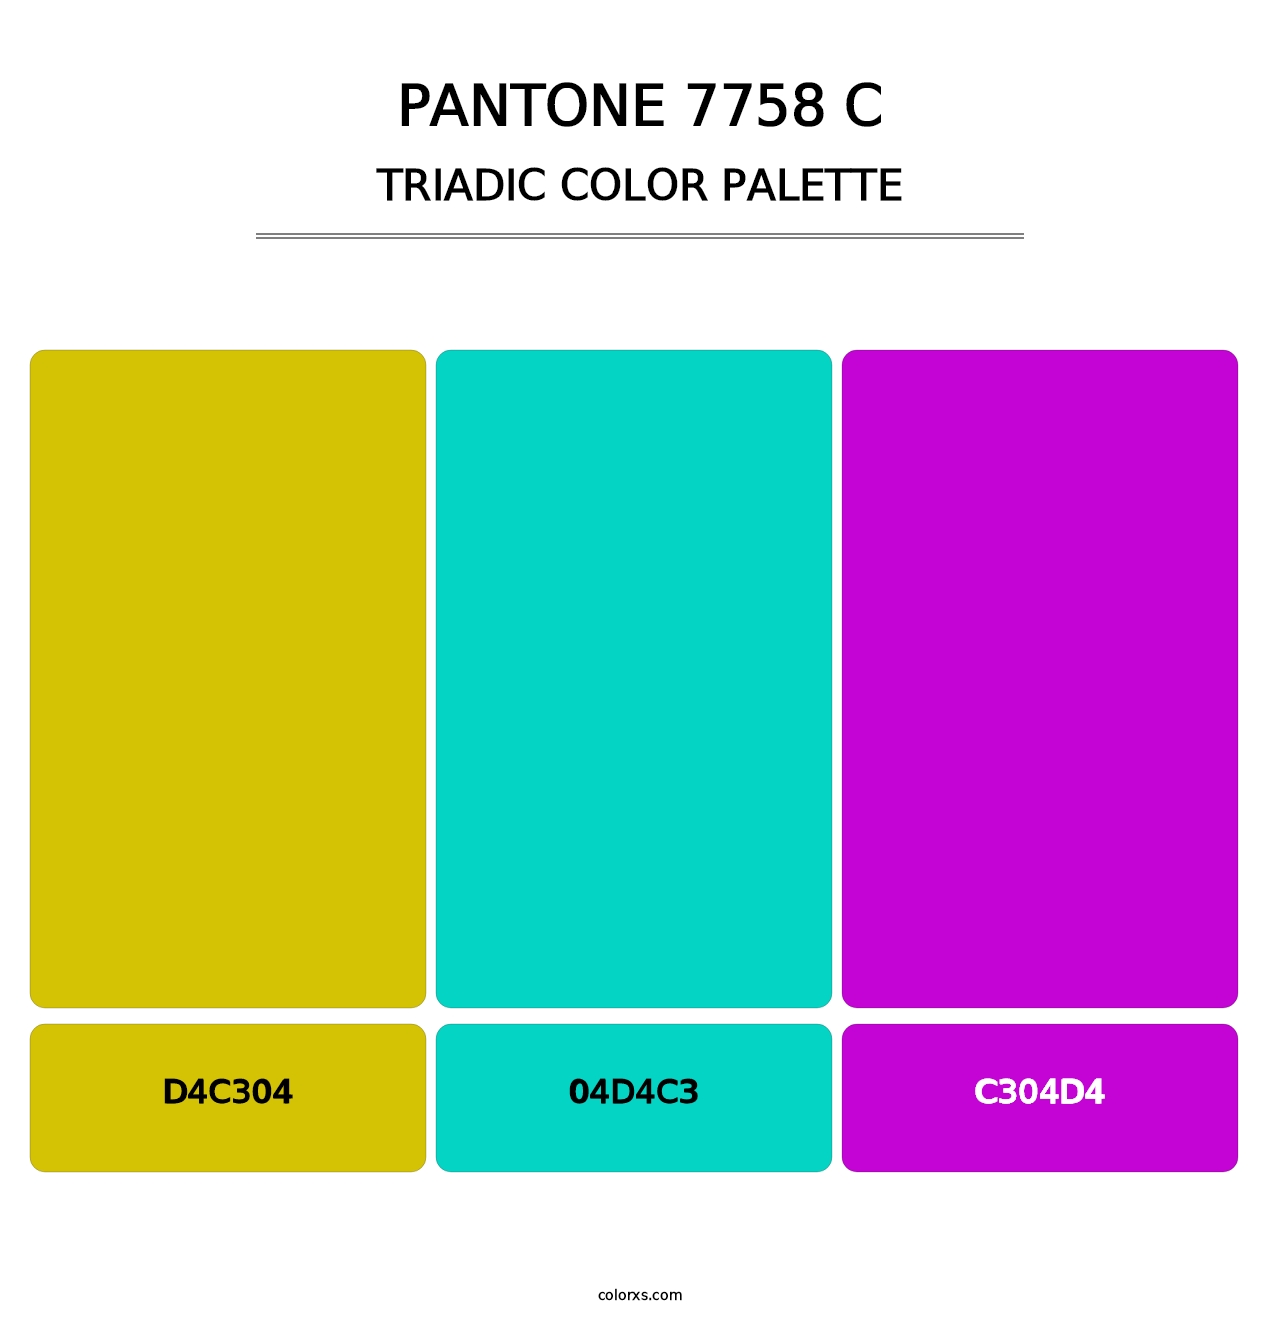 PANTONE 7758 C - Triadic Color Palette